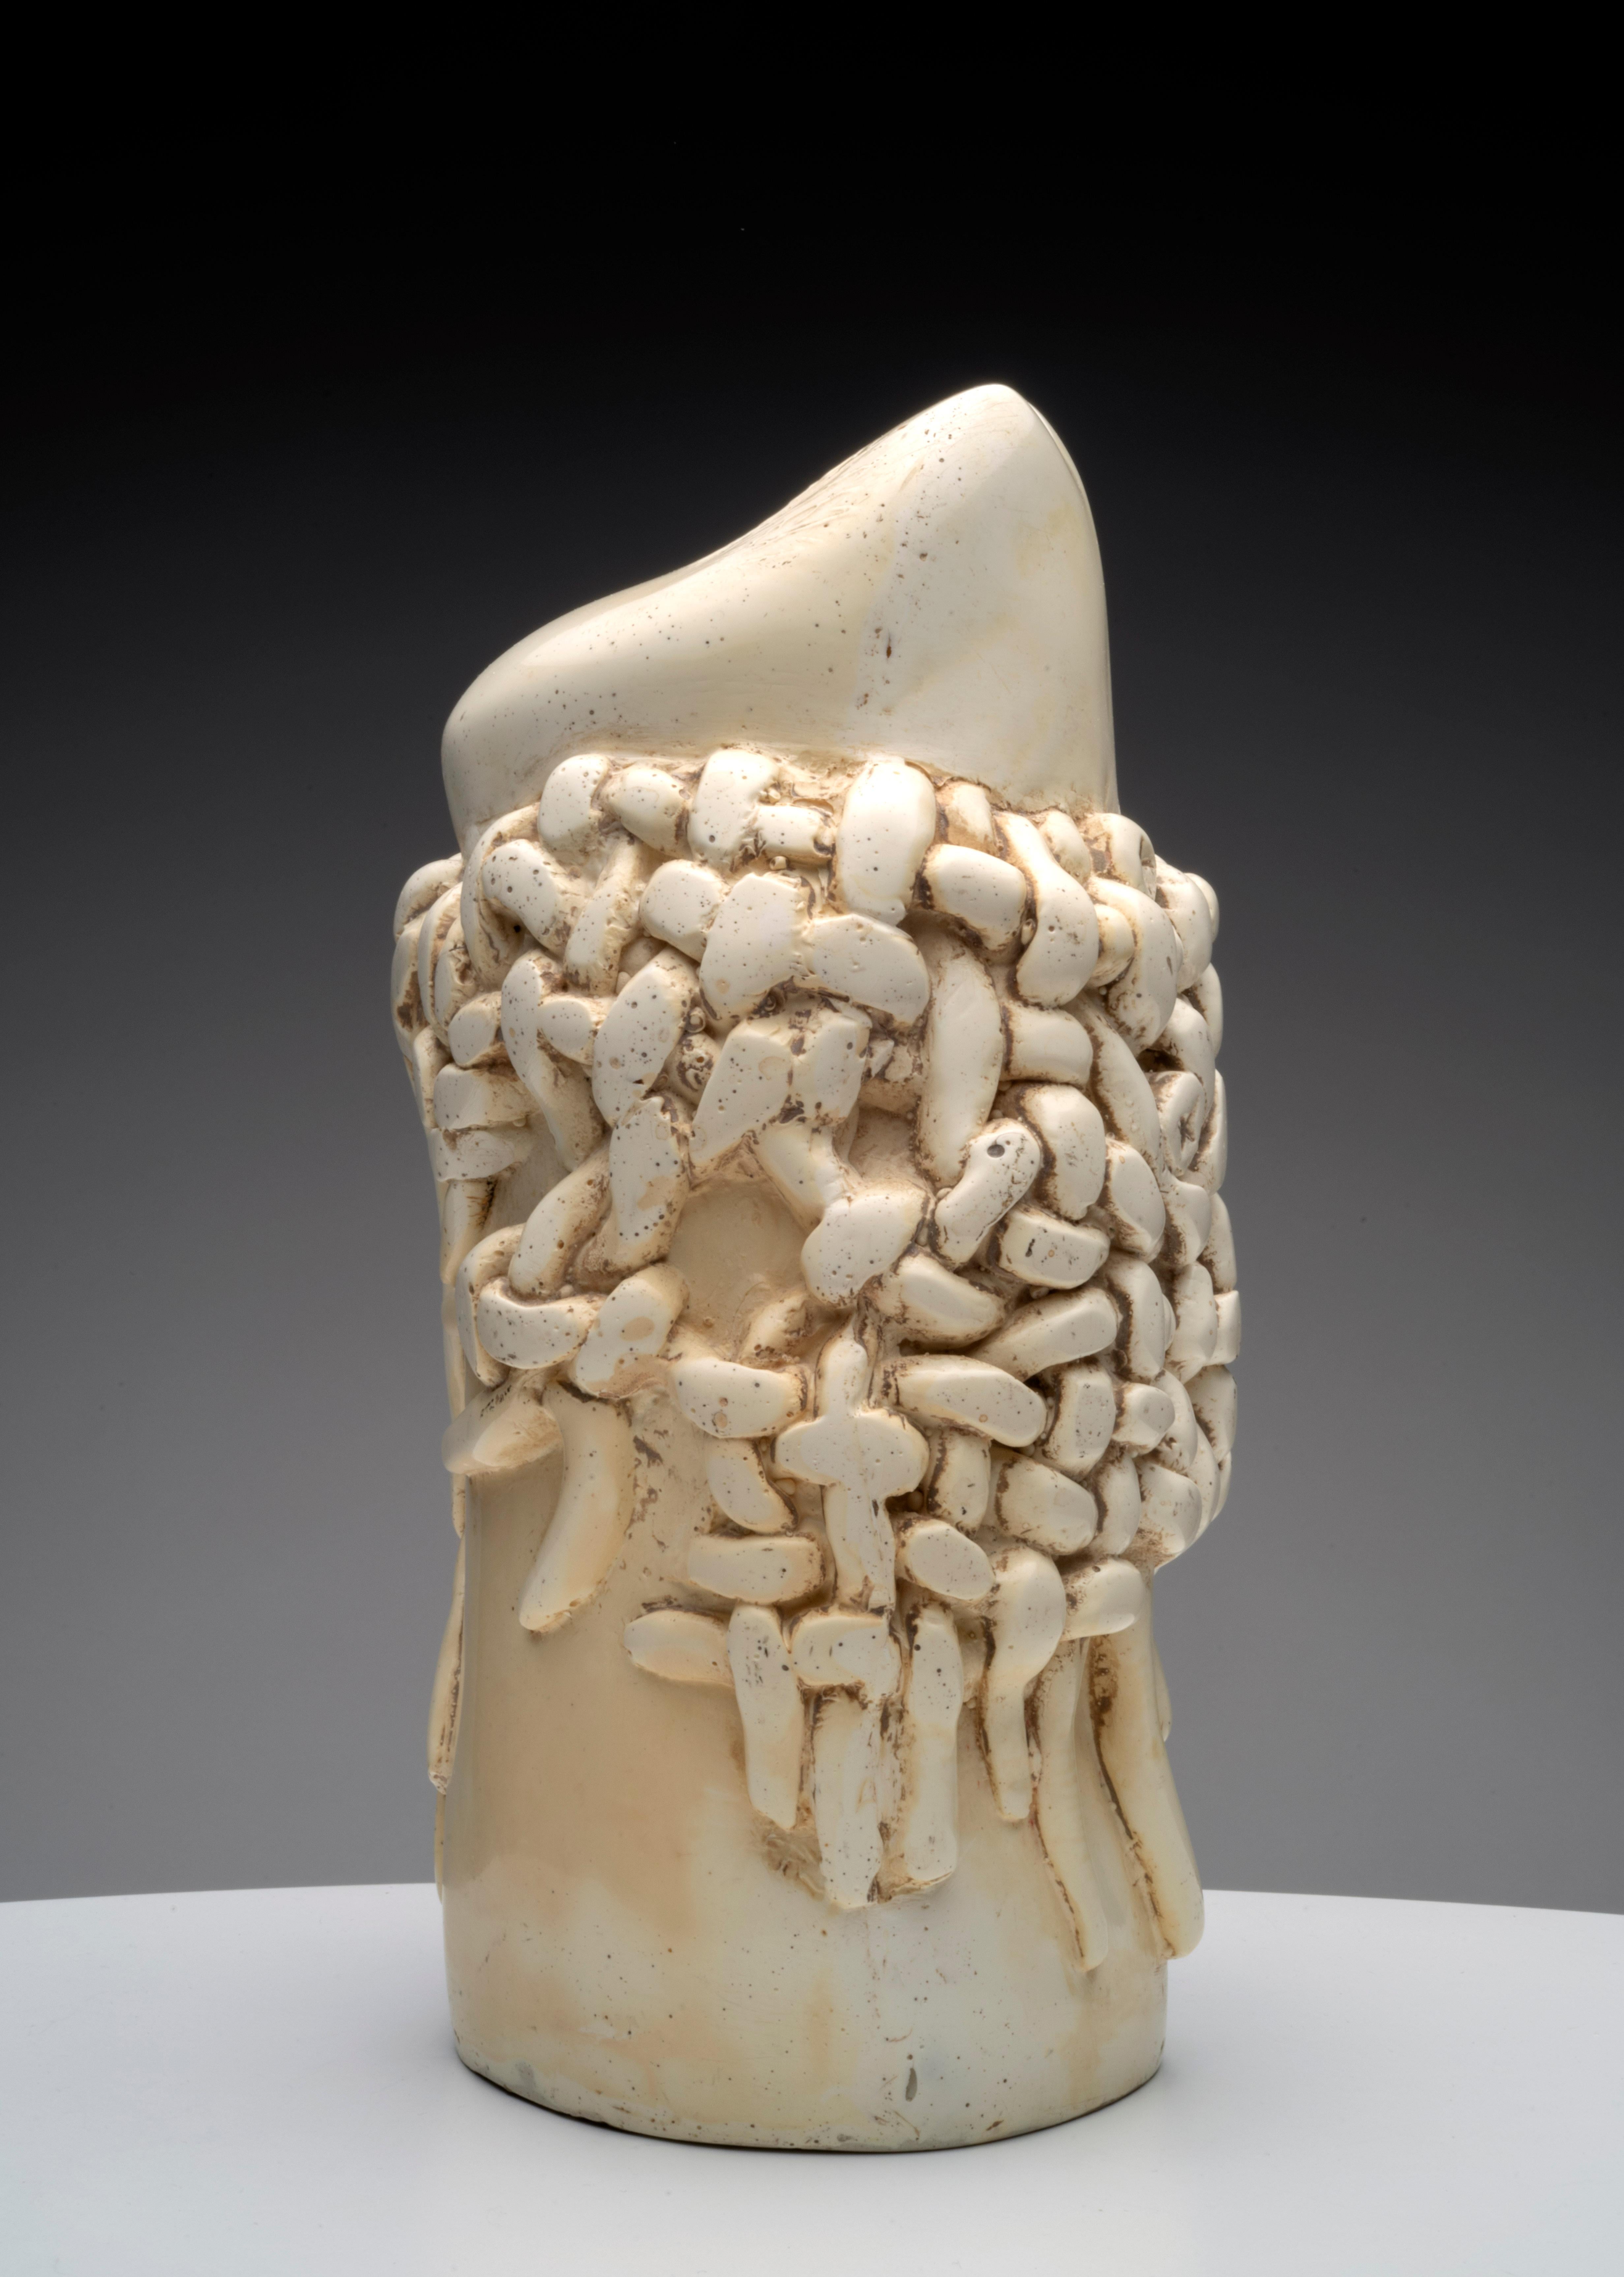 Raul Valdivieso Lateinamerikanische erotische Keramik-Skulptur, 1960er Jahre – Sculpture von Raúl Valdivieso